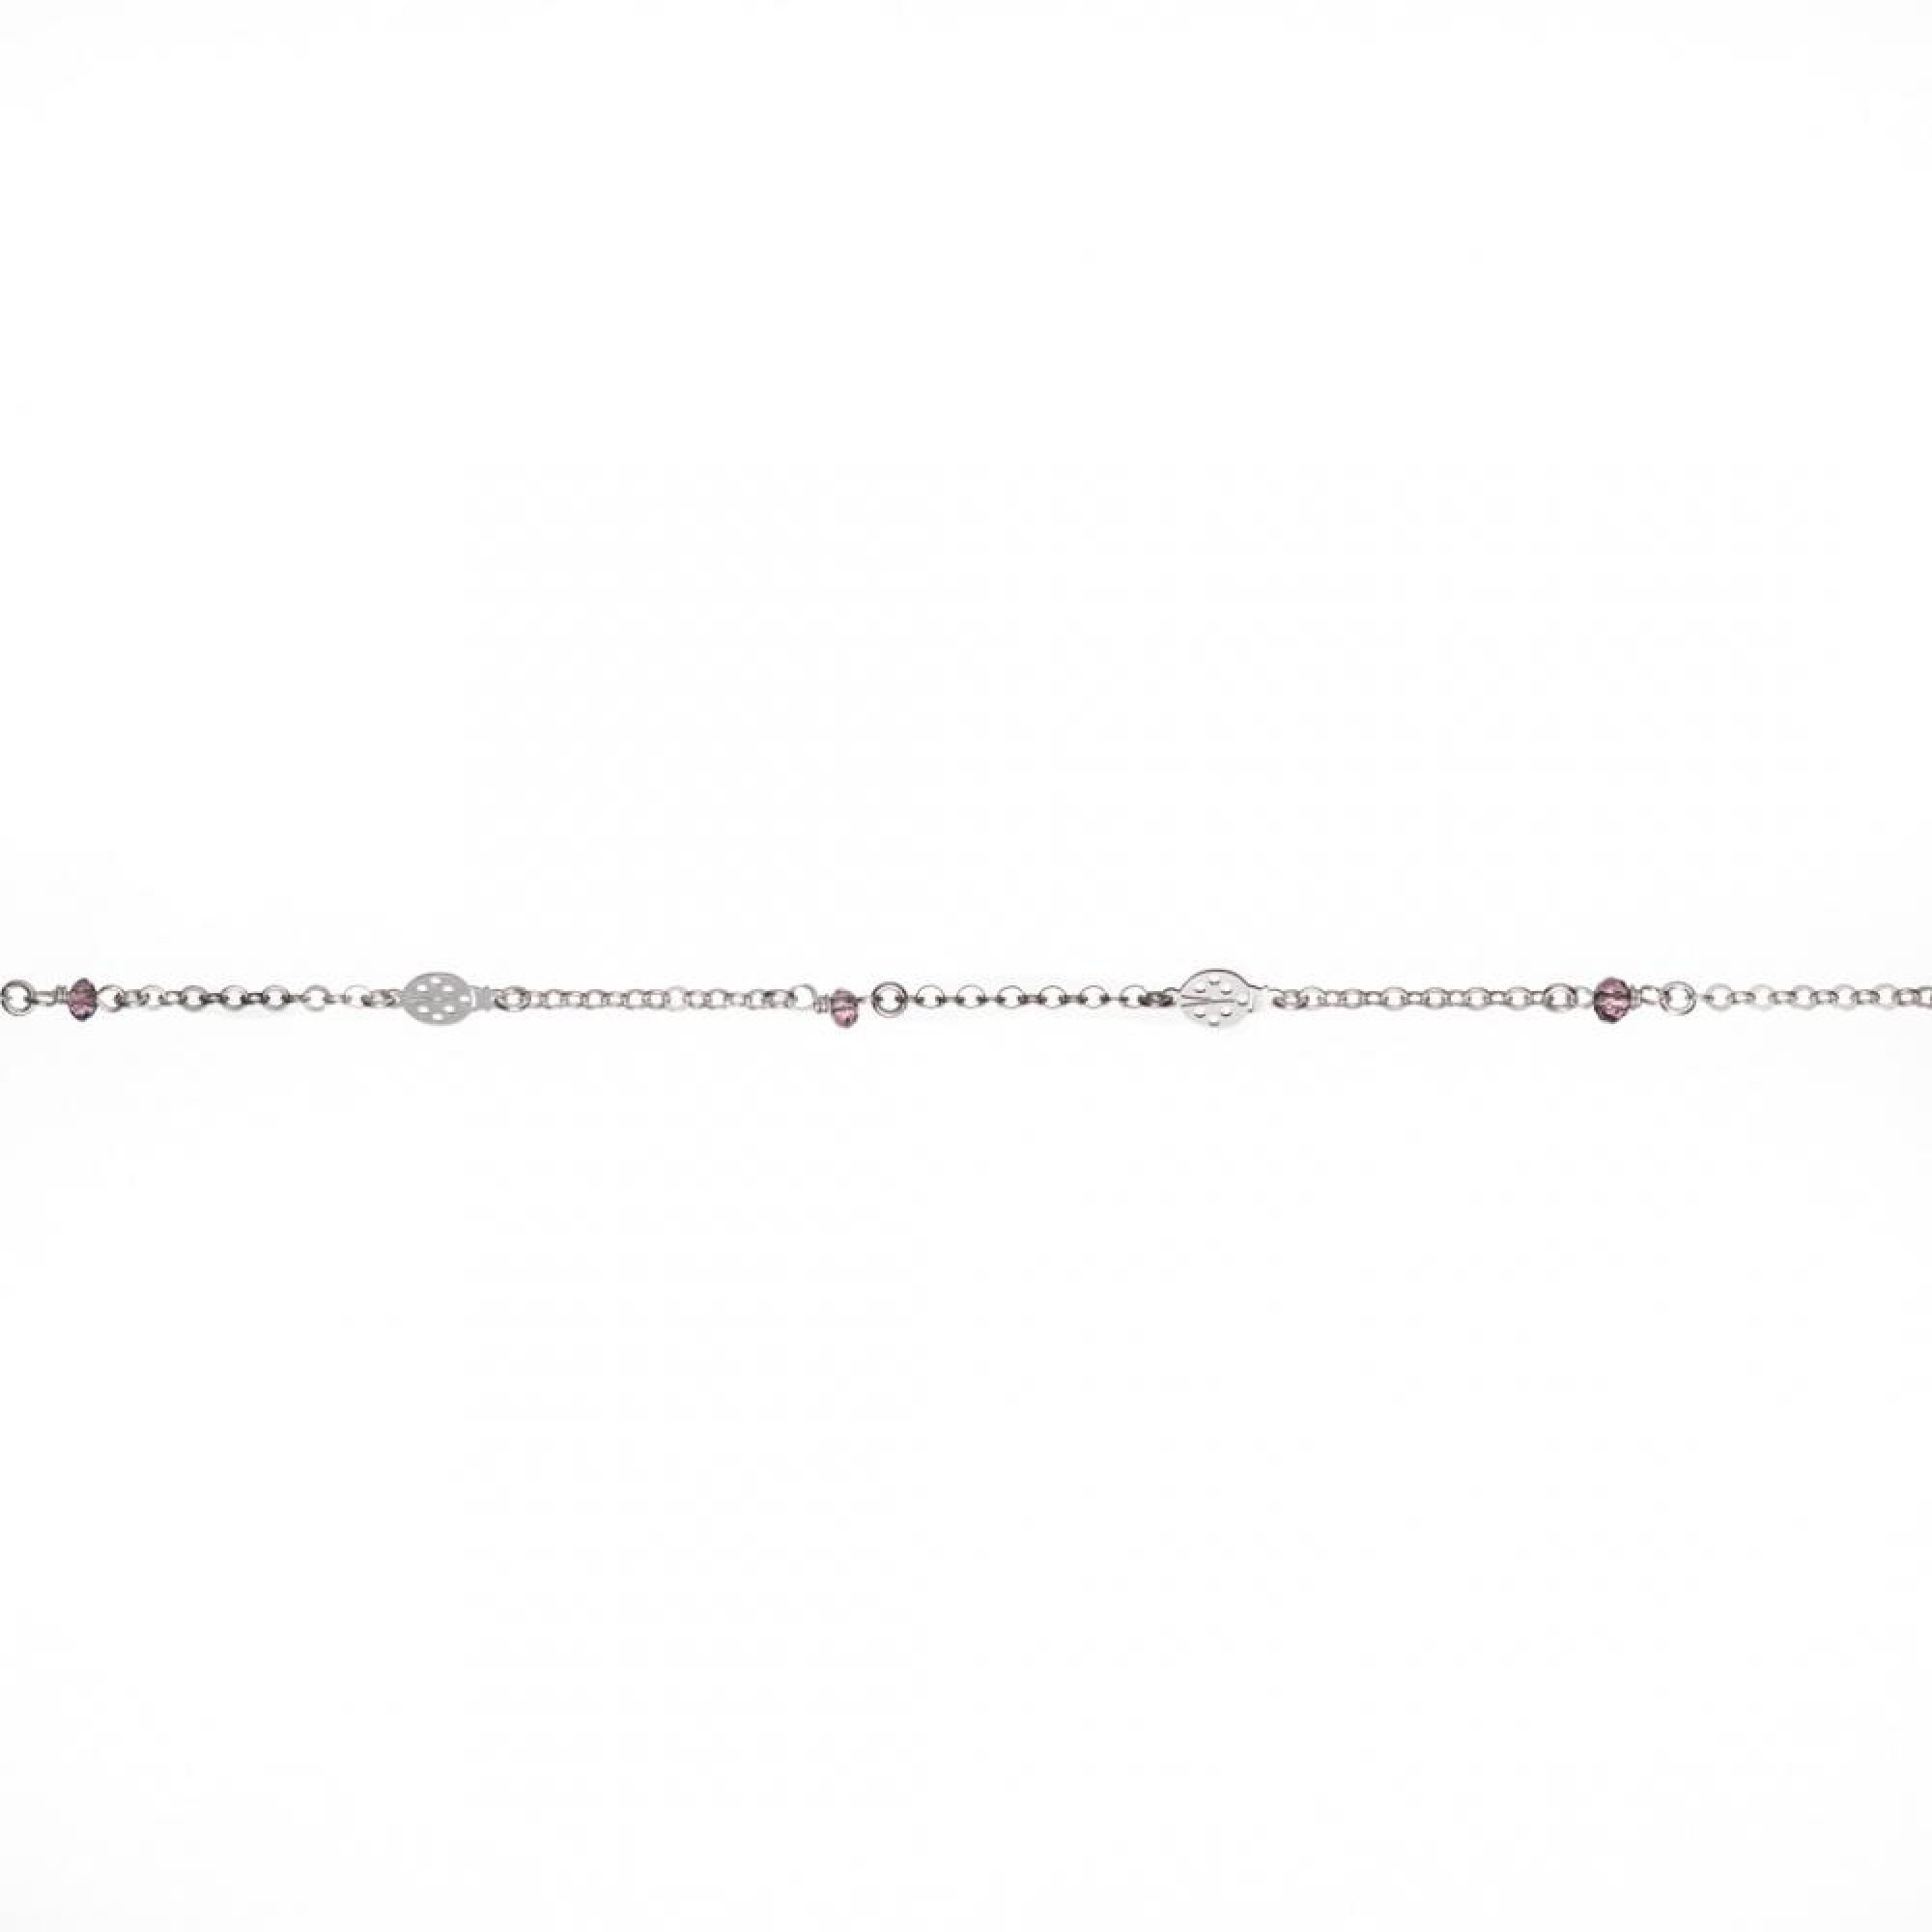 Ladybug bracelet with pink beads